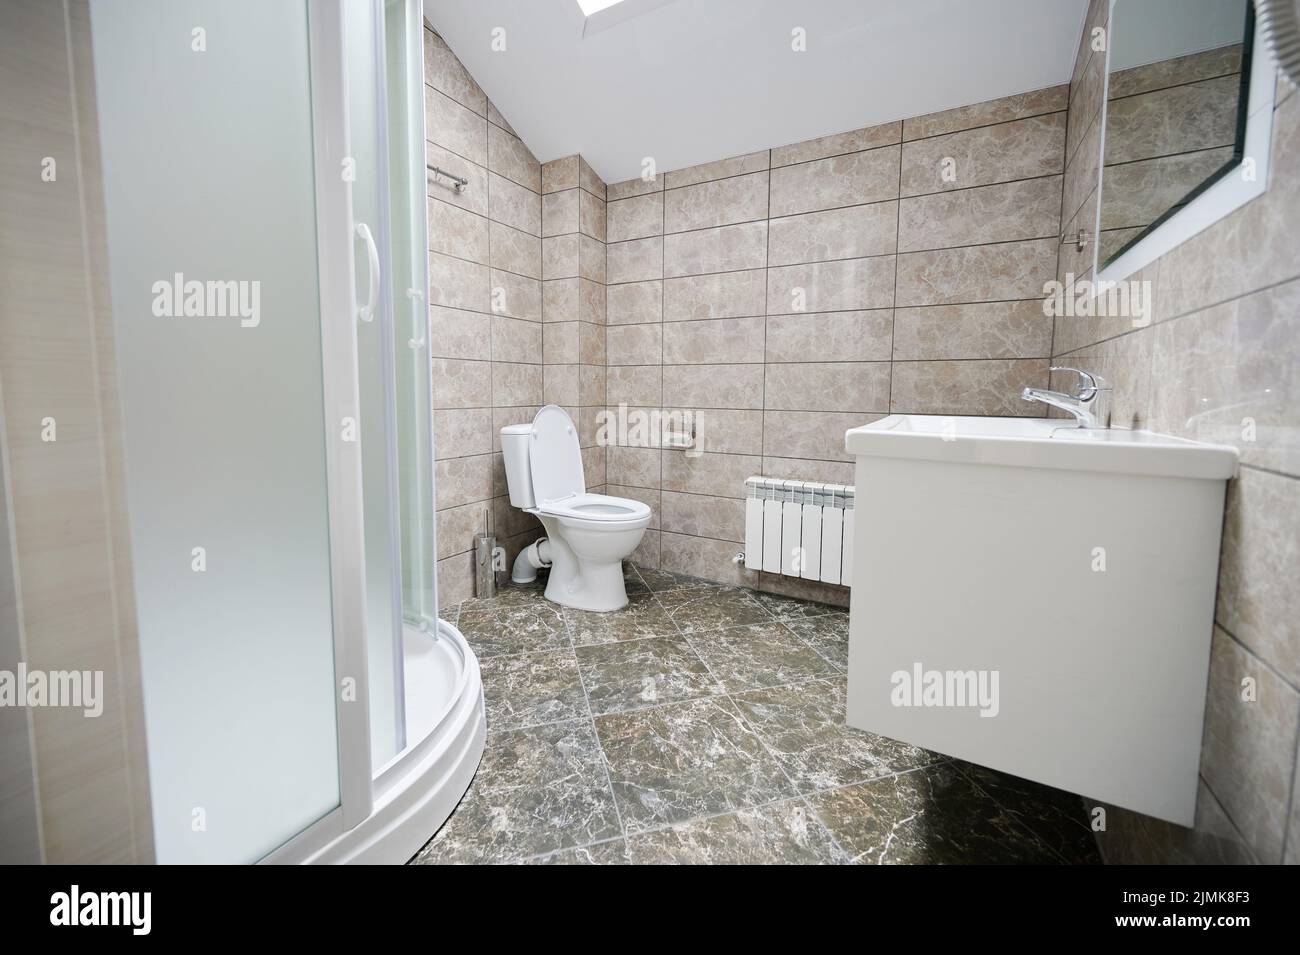 Vue latérale des toilettes vides avec intérieur en marbre propre Banque D'Images